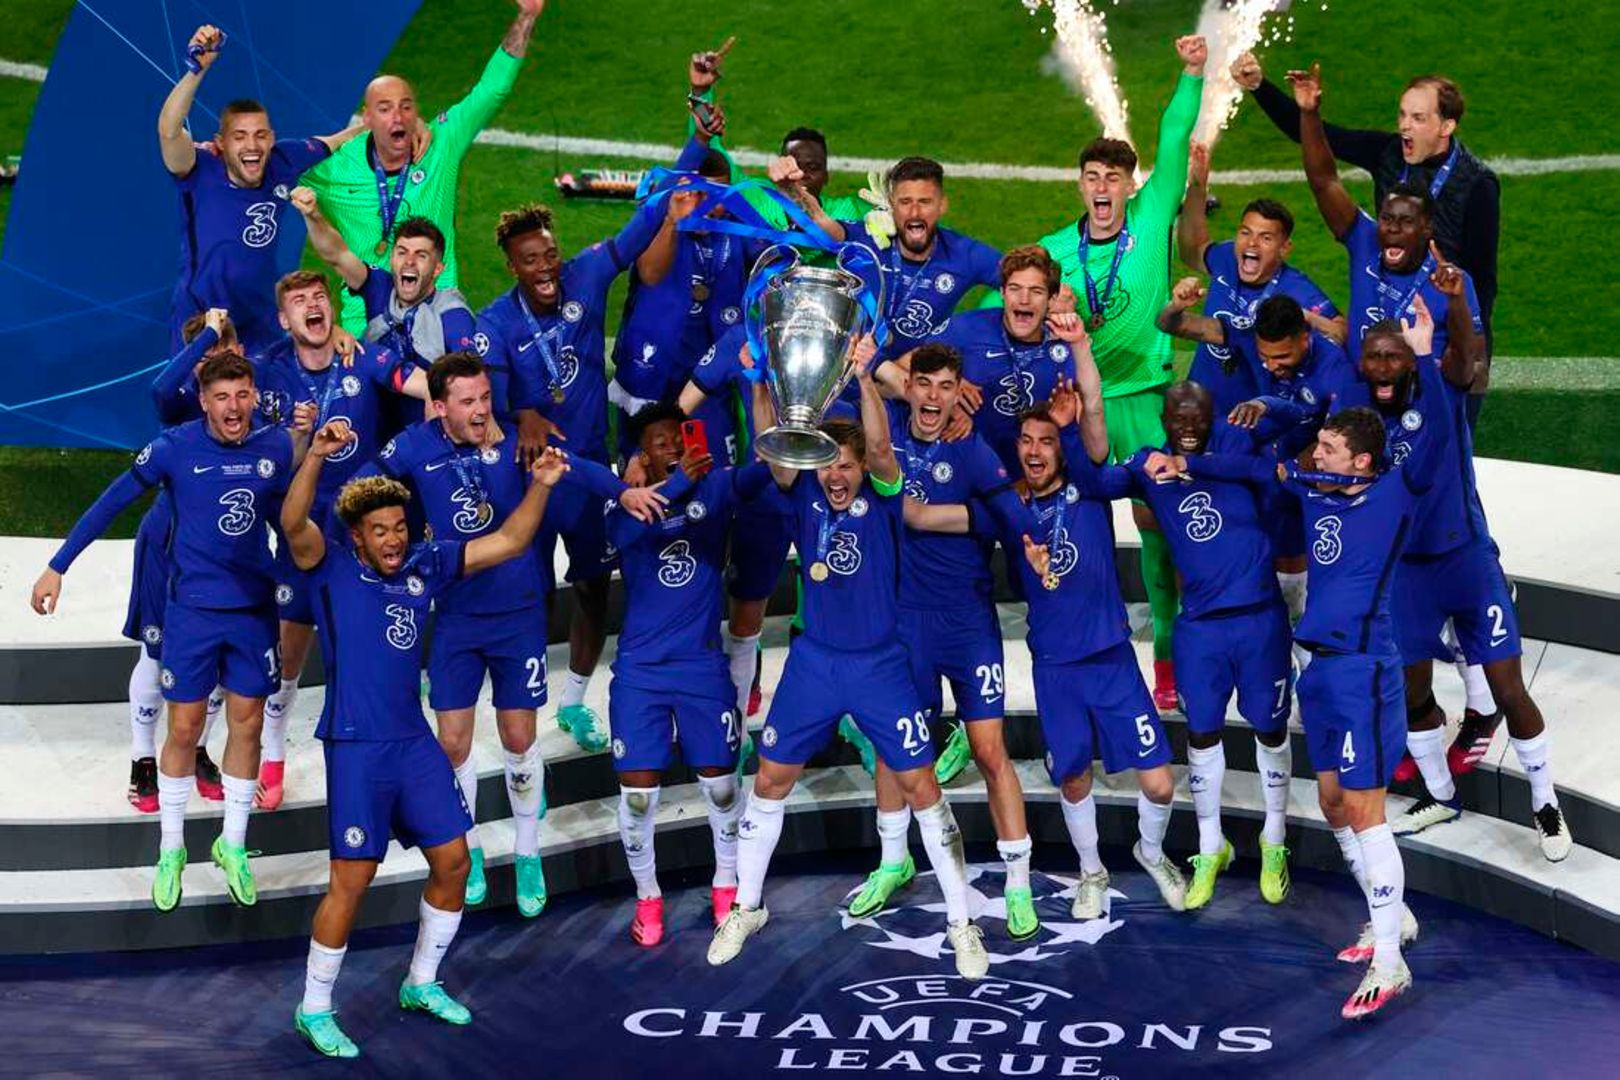 Chelsea win Champions League after Kai Havertz stuns Manchester